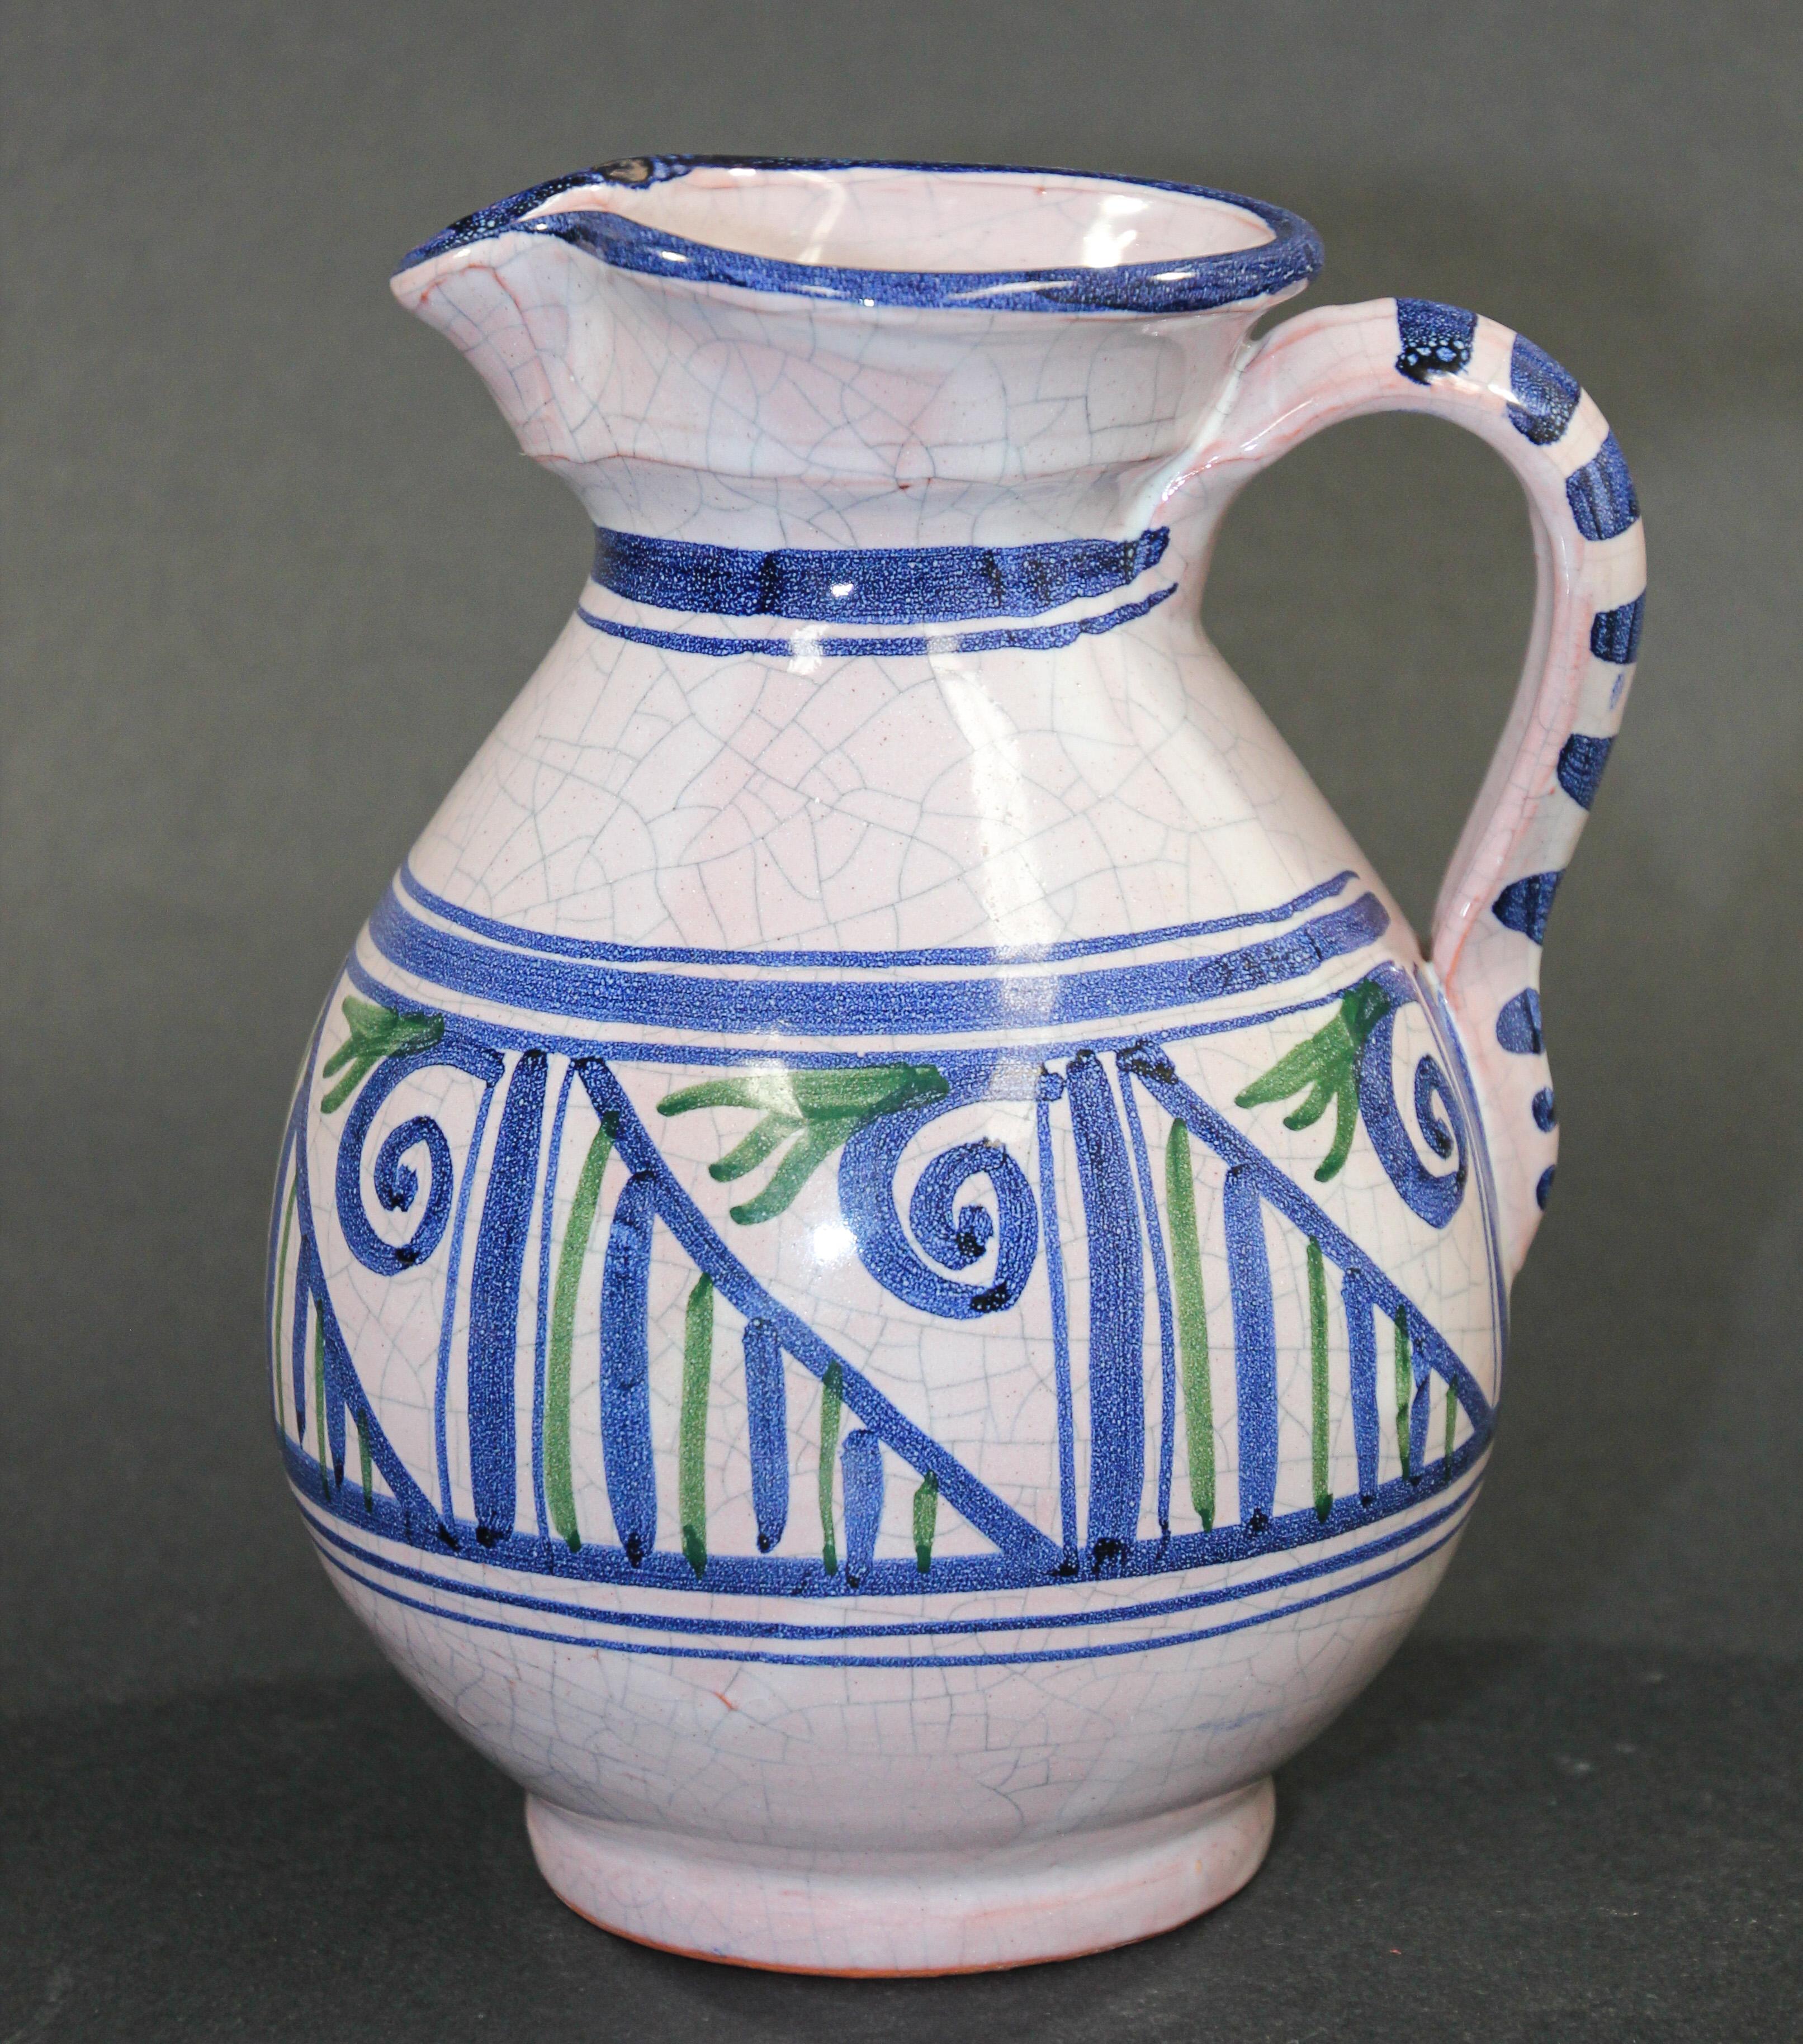 Glasierter, polychromer Keramikkrug oder Blumenvase aus Talavera mit blauem, grünem und weißem Muster.
Handbemalter Krug aus Talavera-Keramik, handgefertigt von qualifizierten Kunsthandwerkern in Spanien im Picasso-Stil.
Einzigartiges Stück